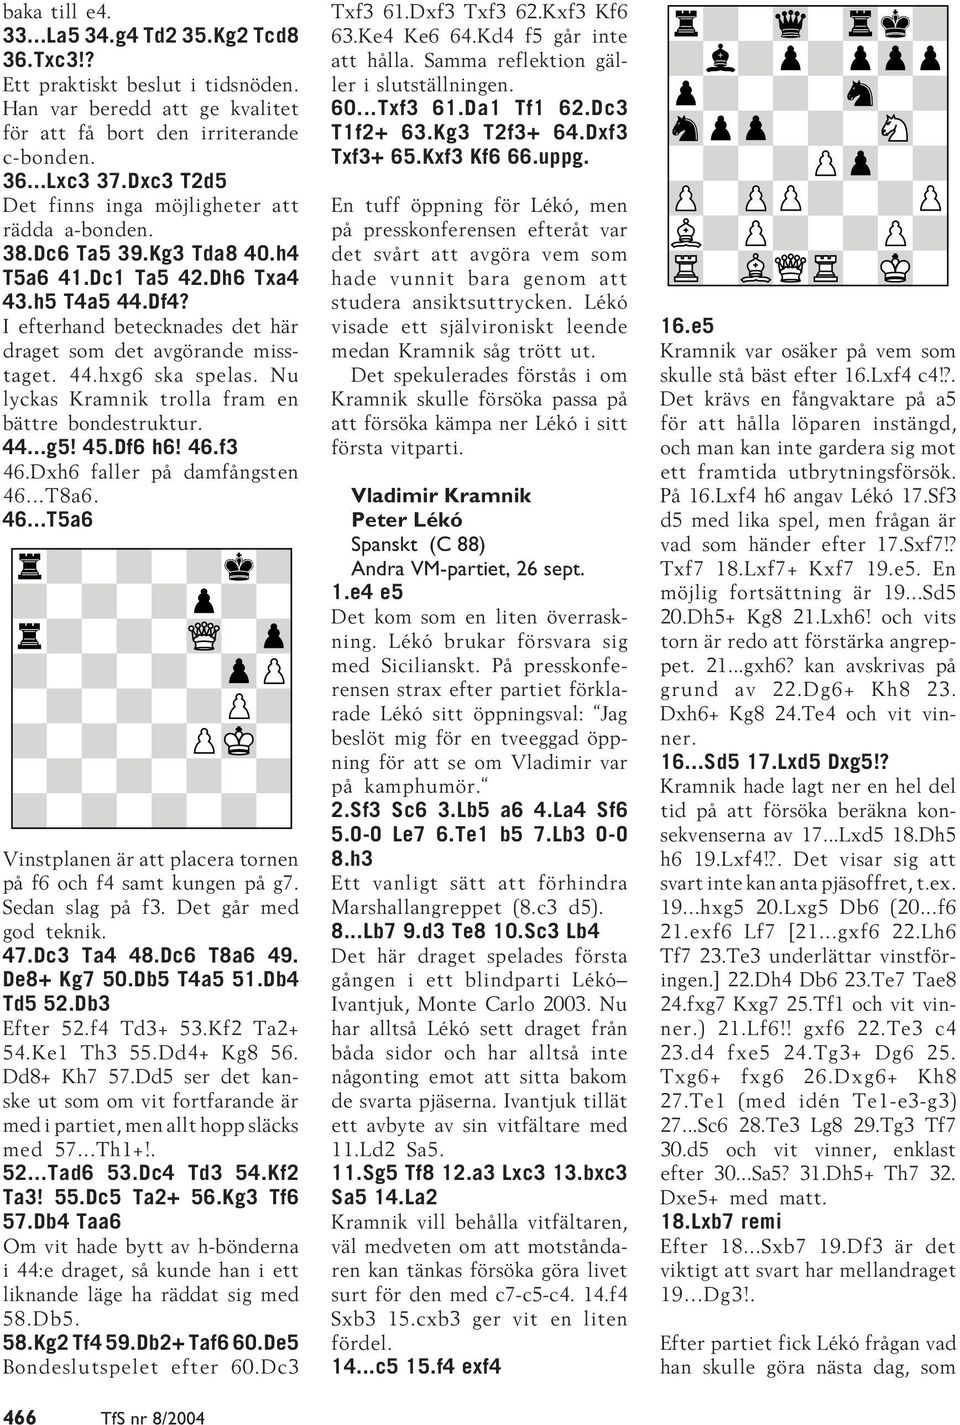 44.hxg6 ska spelas. Nu lyckas Kramnik trolla fram en bättre bondestruktur. 44...g5! 45.Df6 h6! 46.f3 46.Dxh6 faller på damfångsten 46...T8a6. 46...T5a6 Vinstplanen är att placera tornen på f6 och f4 samt kungen på g7.